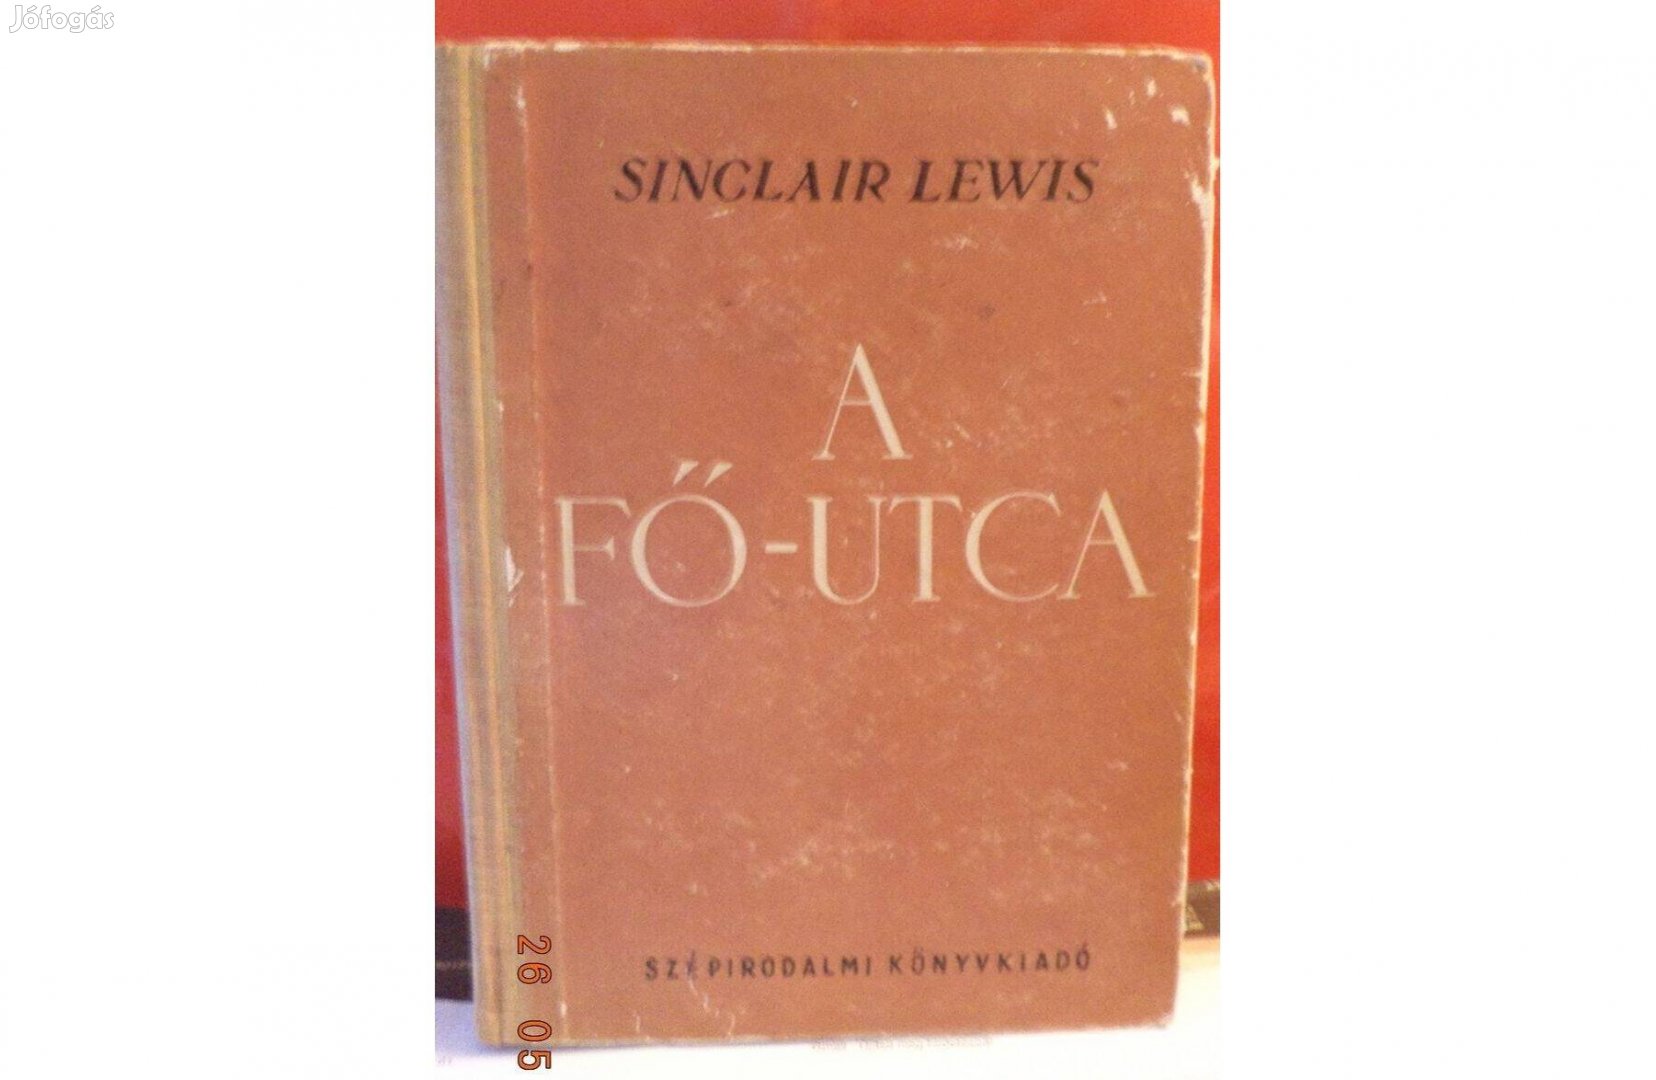 Sinclair Lewis: A Fő - utca